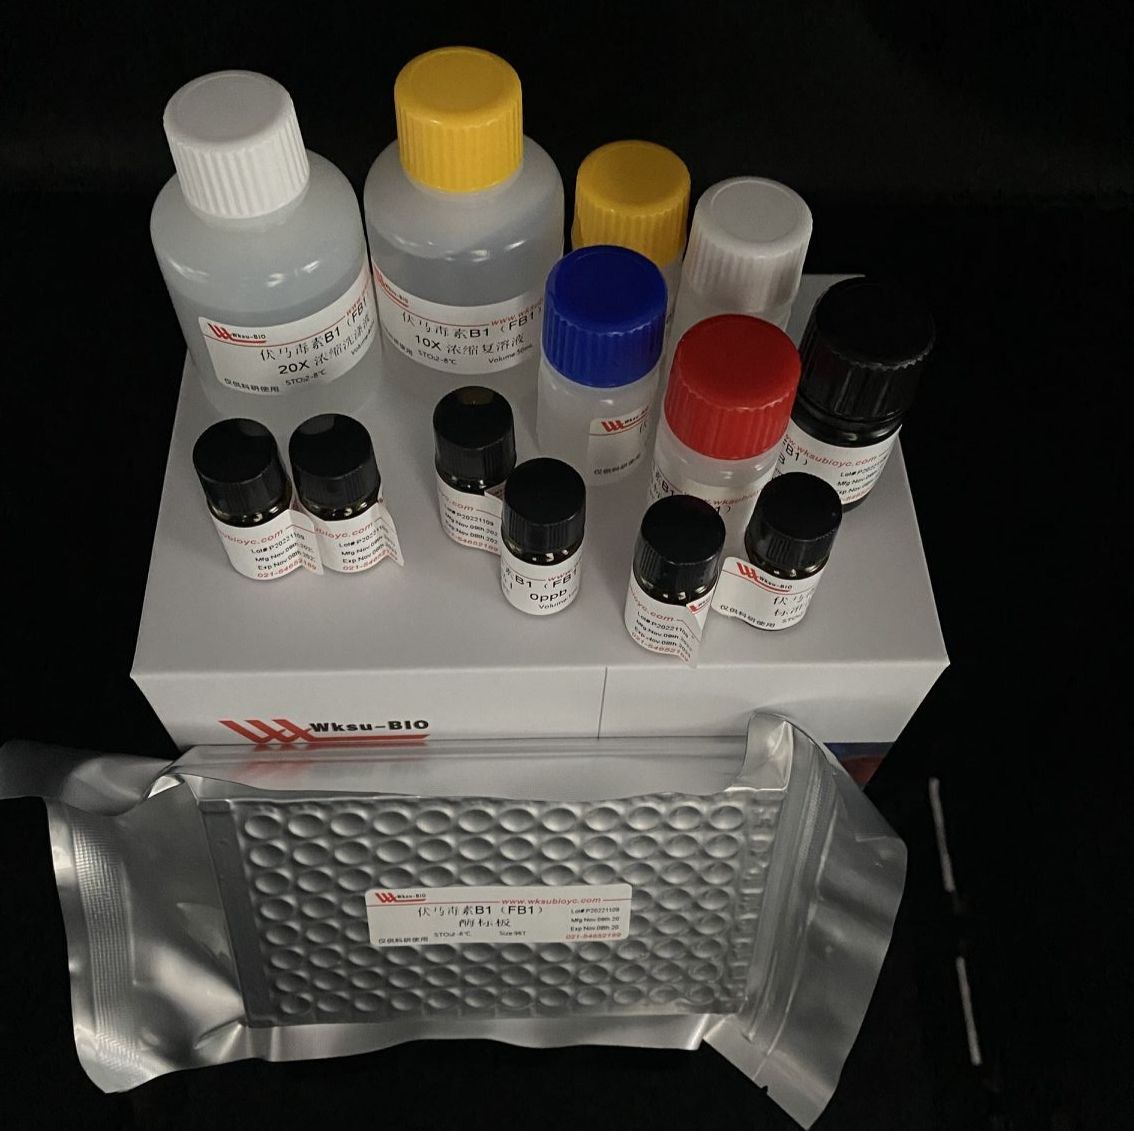 肌酸(Creatine)含量试剂盒(肌酸酶法),微板法